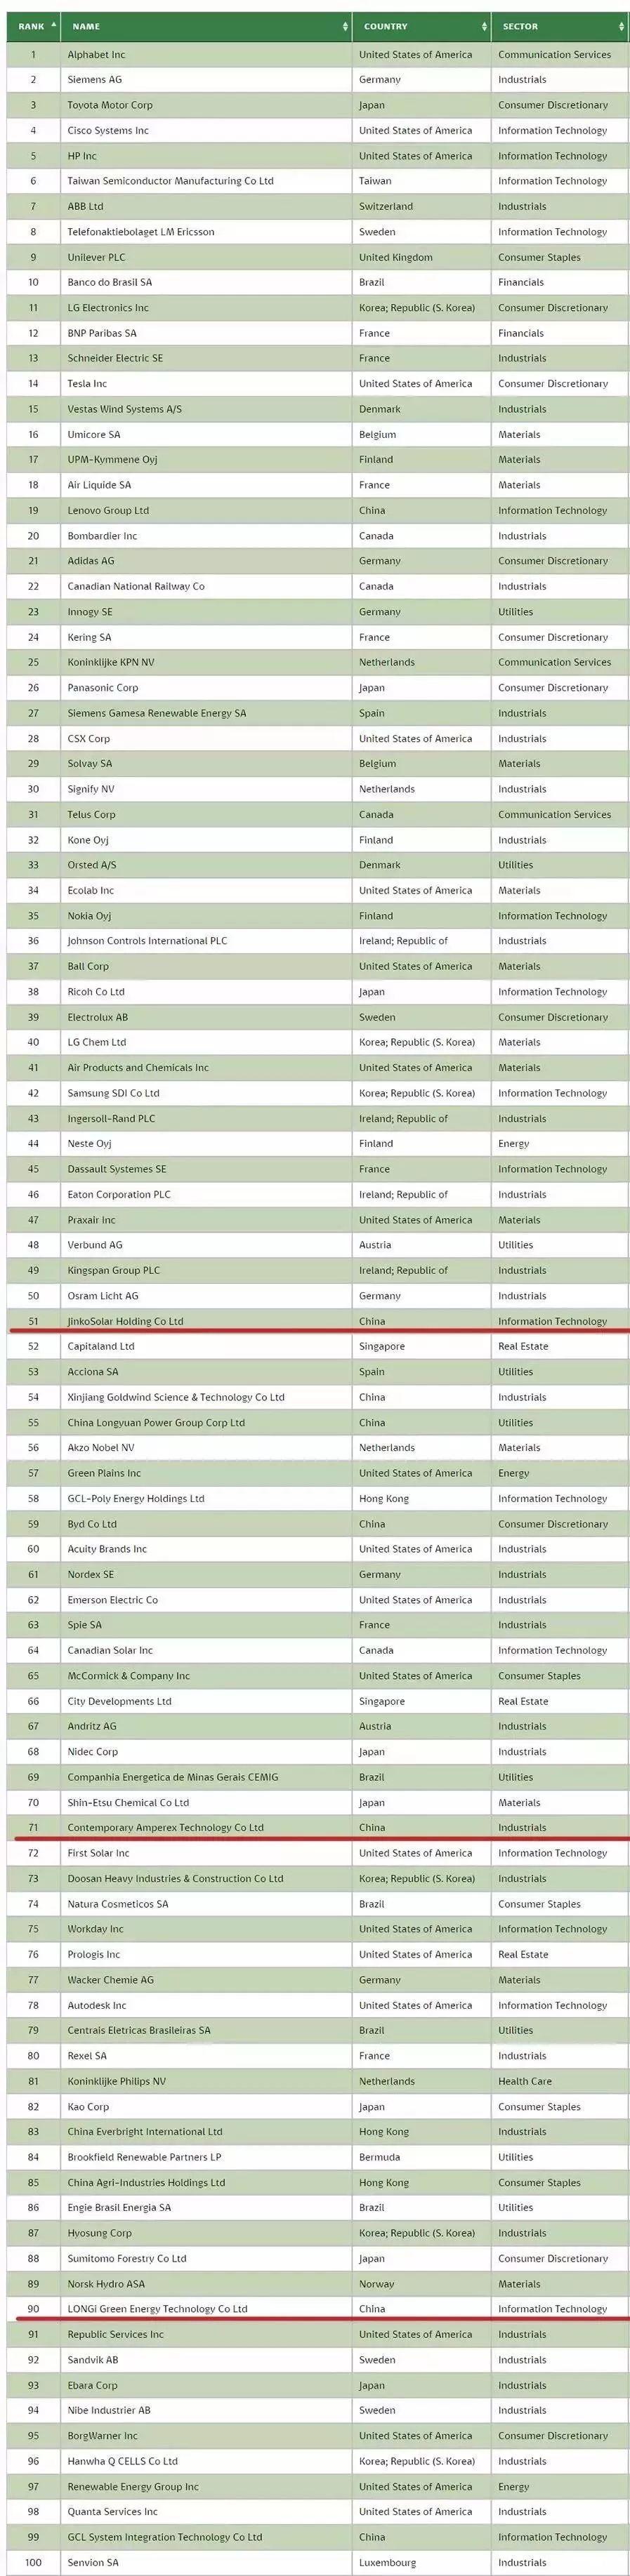 中国环保公司排名世界环保公司排名(图2)